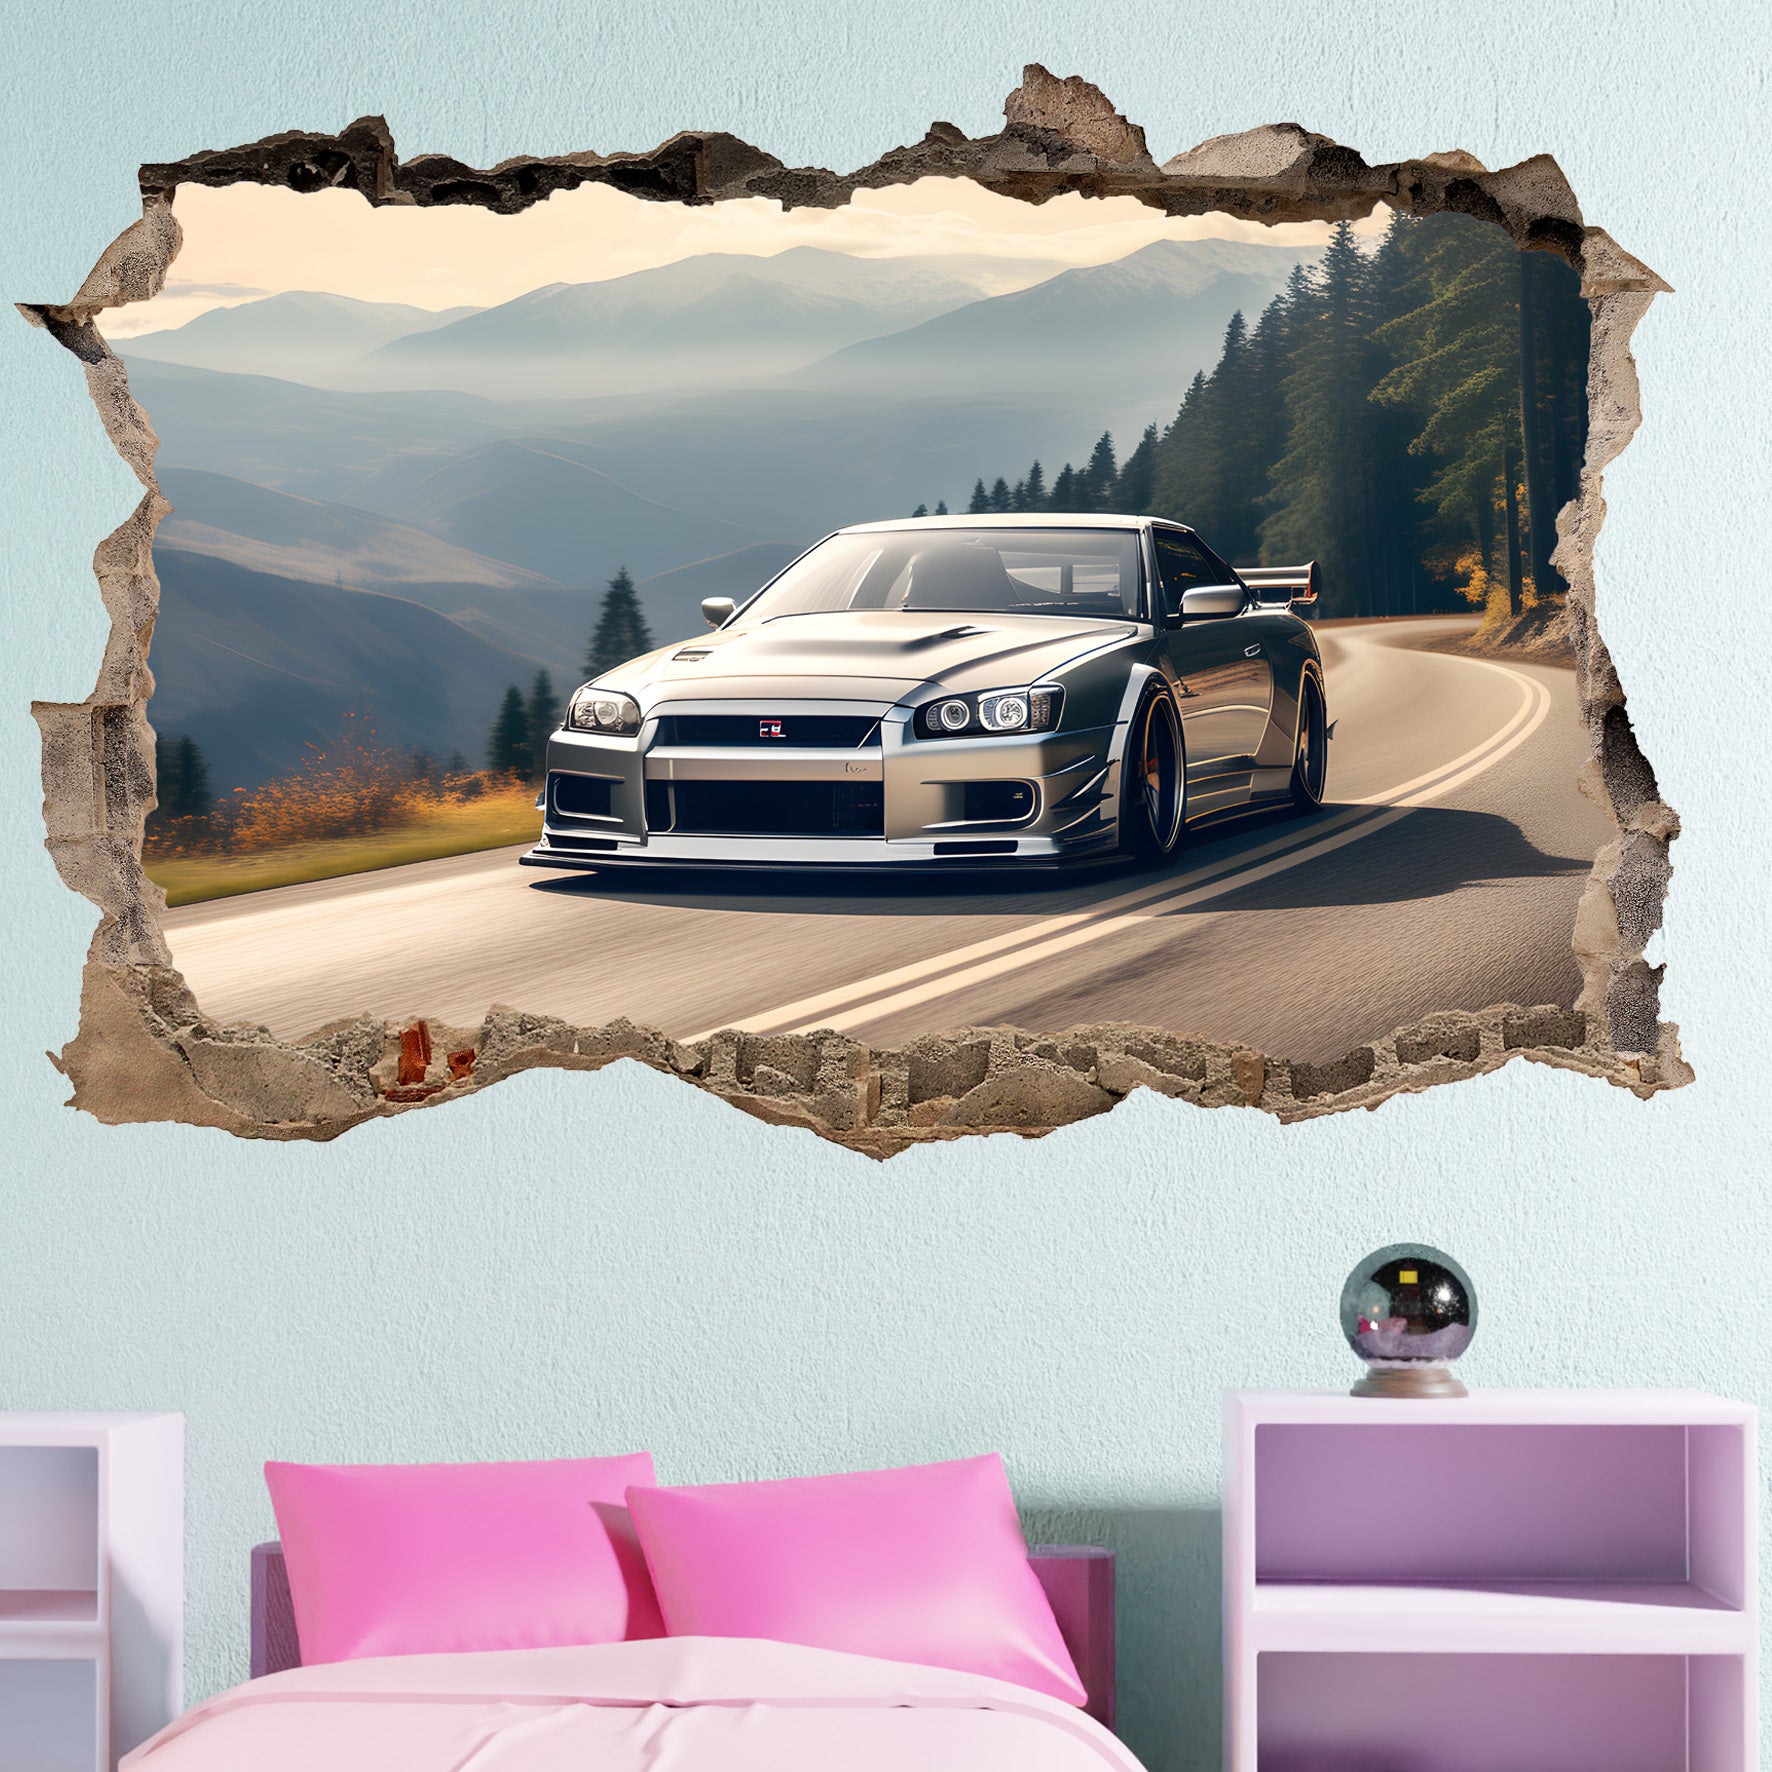 Sport Car Nissan GTR Wall Sticker Art Poster